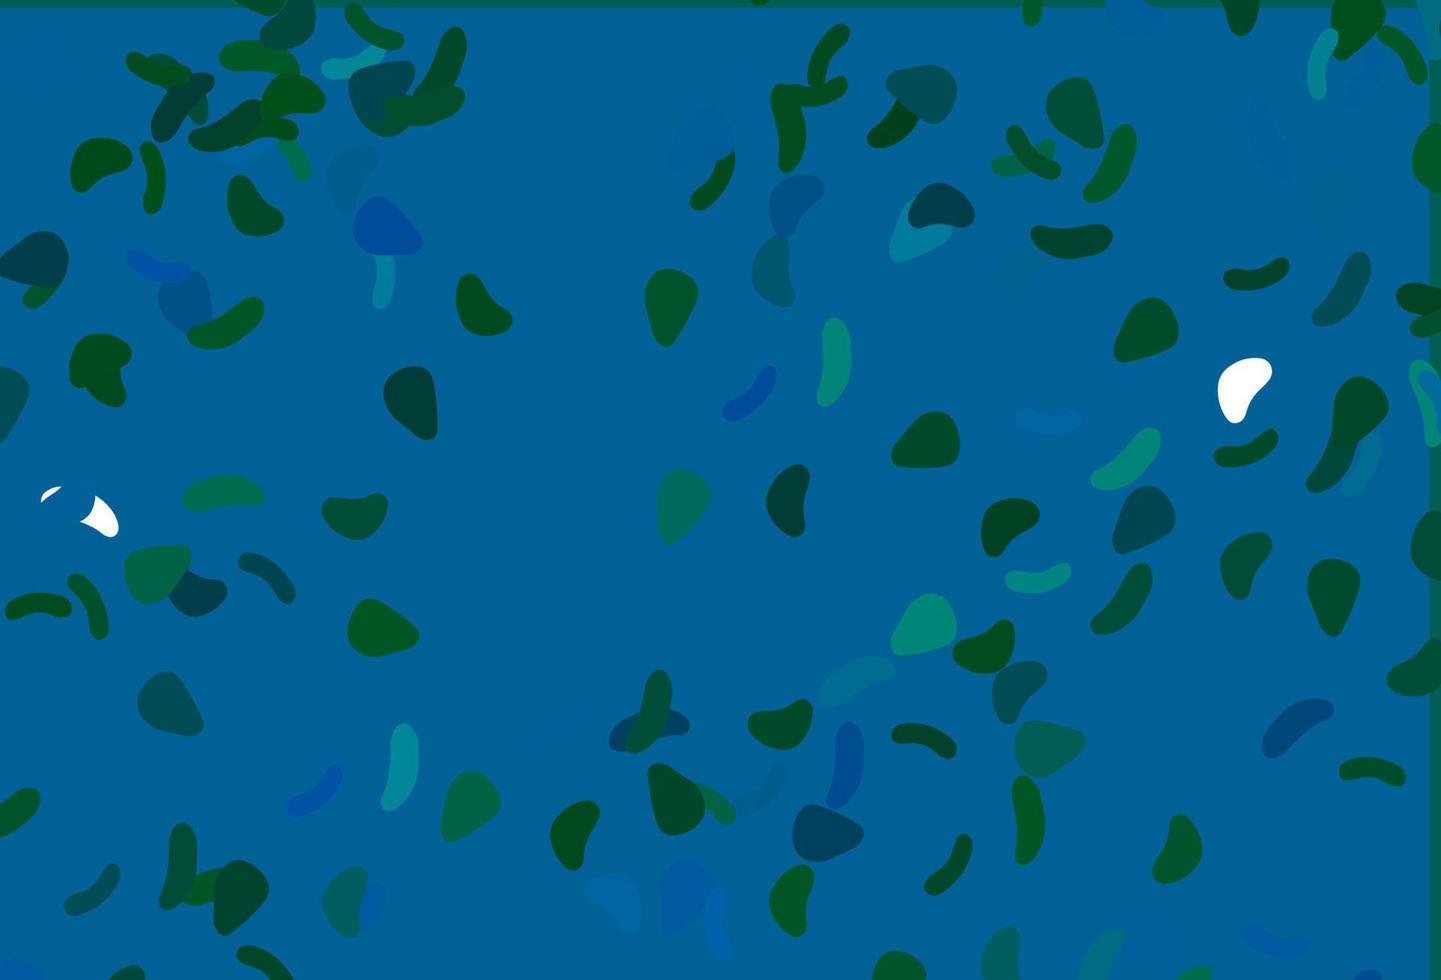 textura de vector azul claro, verde con formas aleatorias.